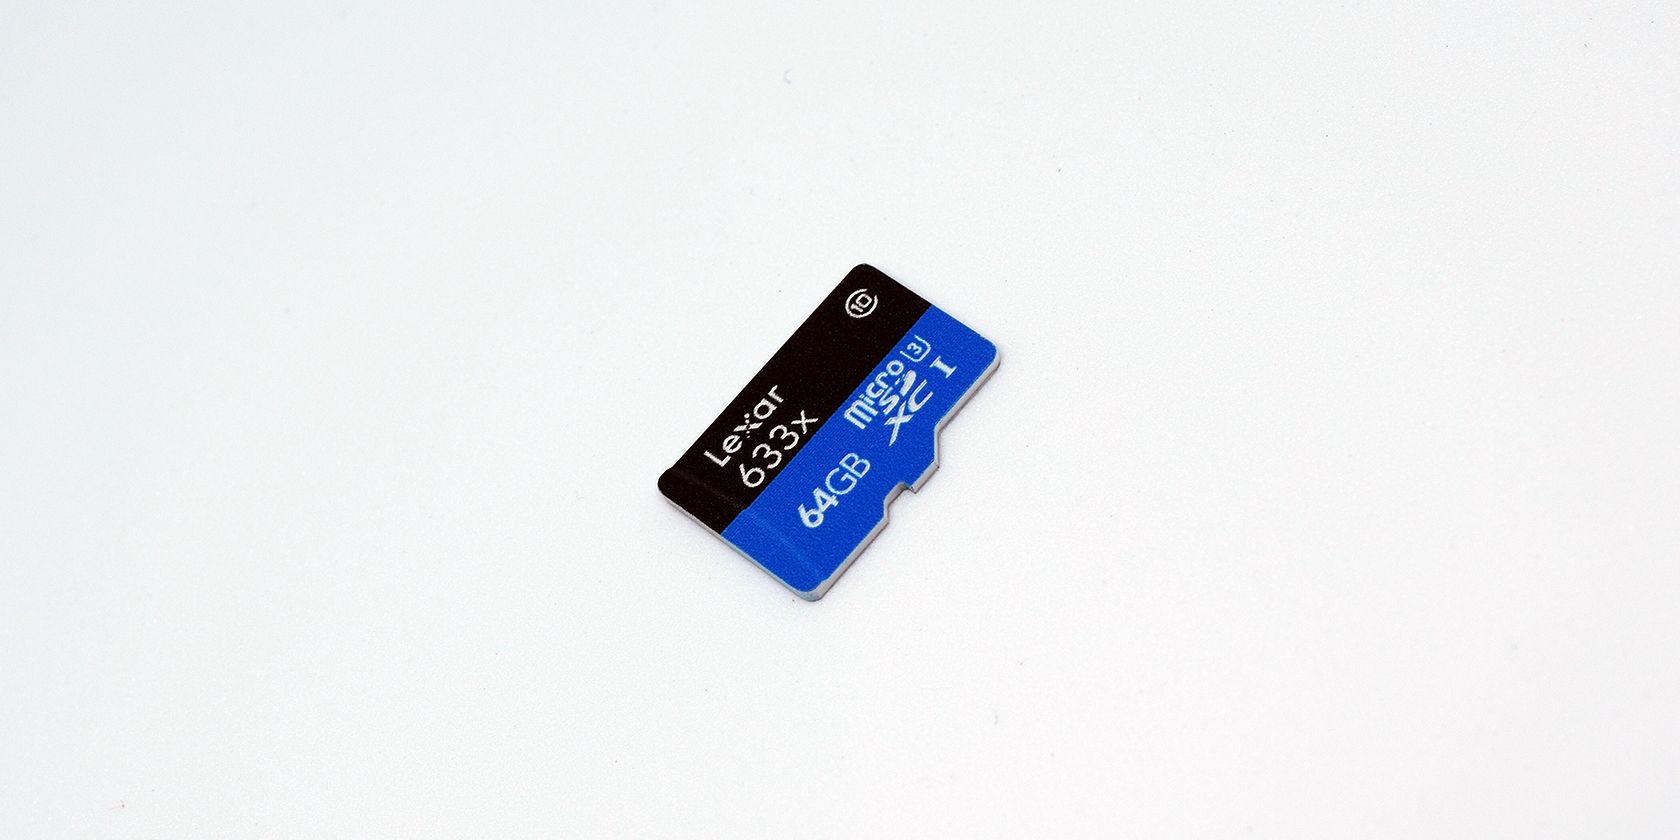 64gb microSD card from Lexar